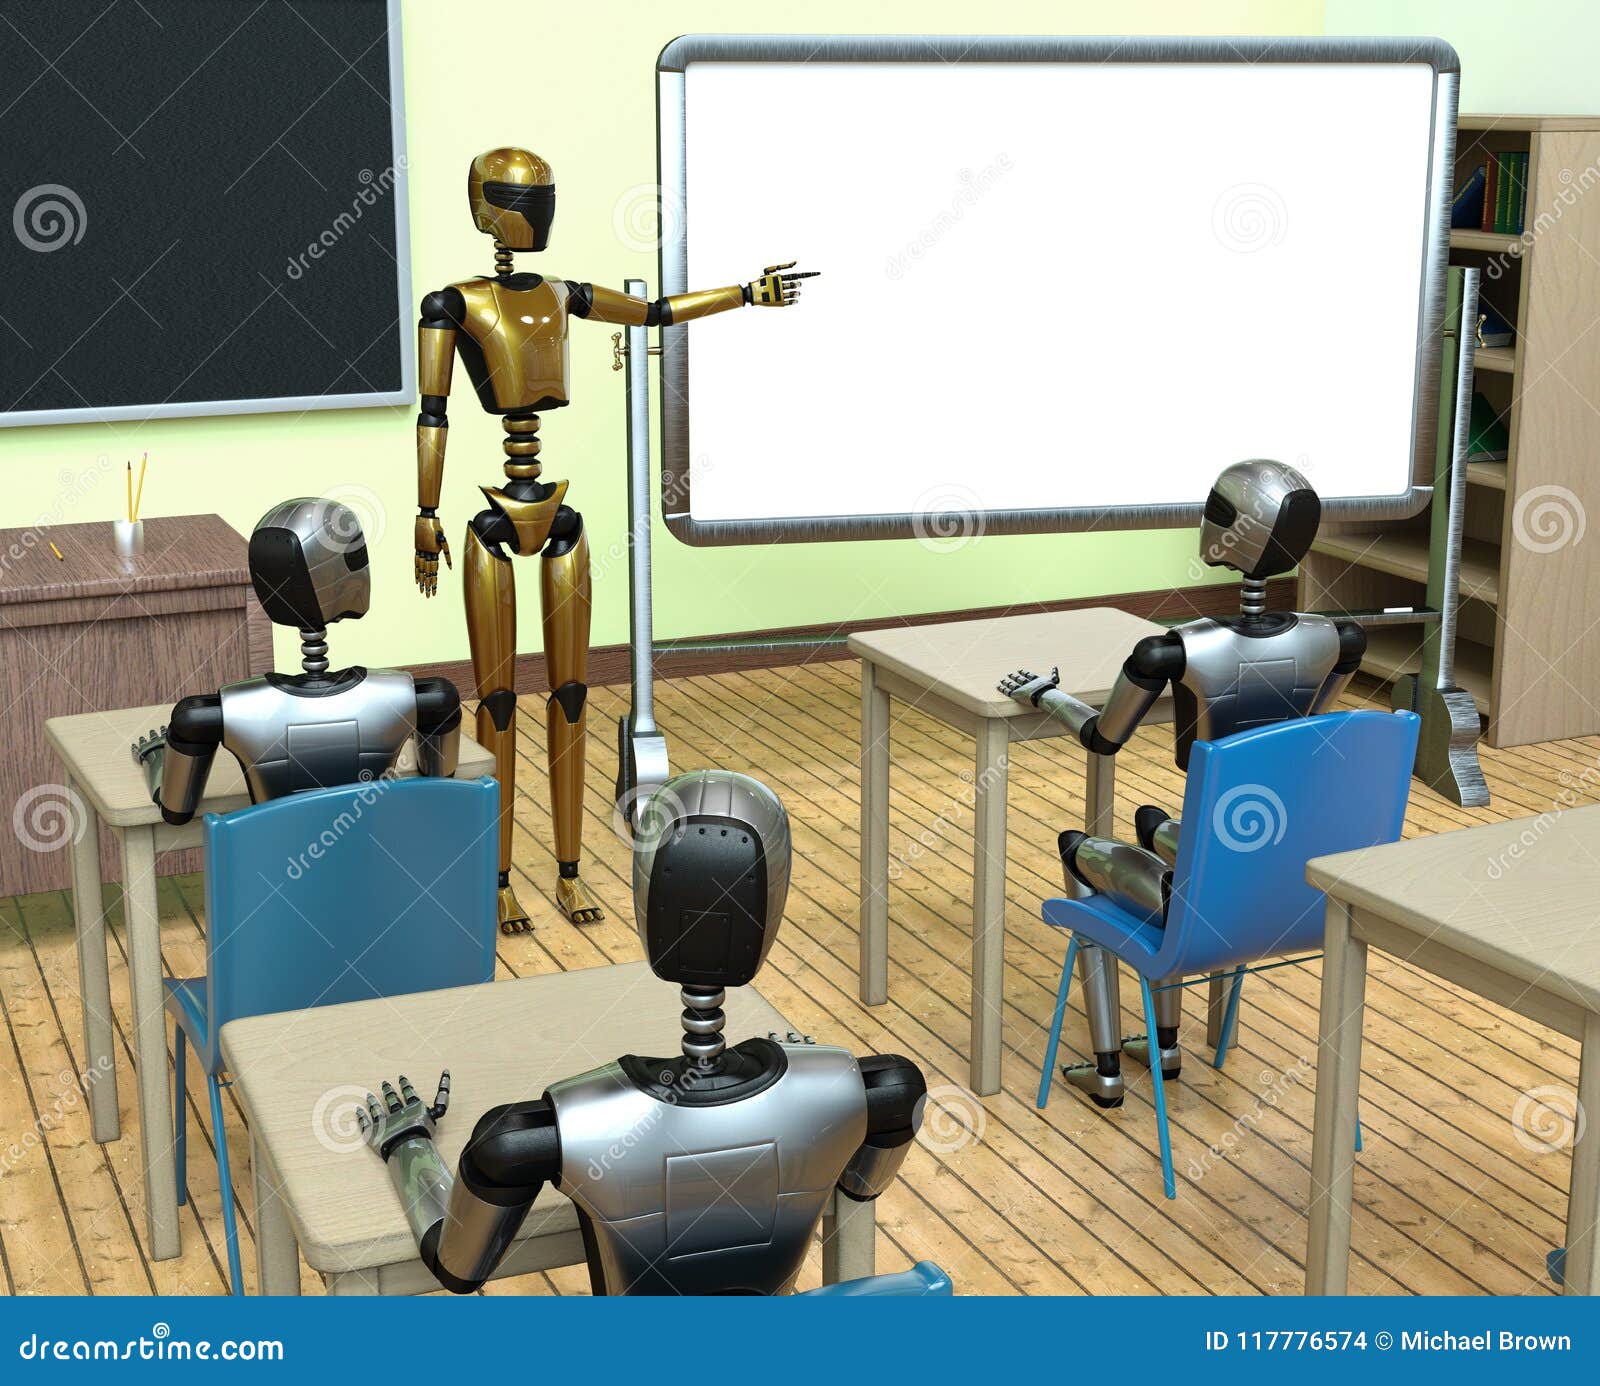 AI Machine Learning Robot Technology Future Stock Photo ...